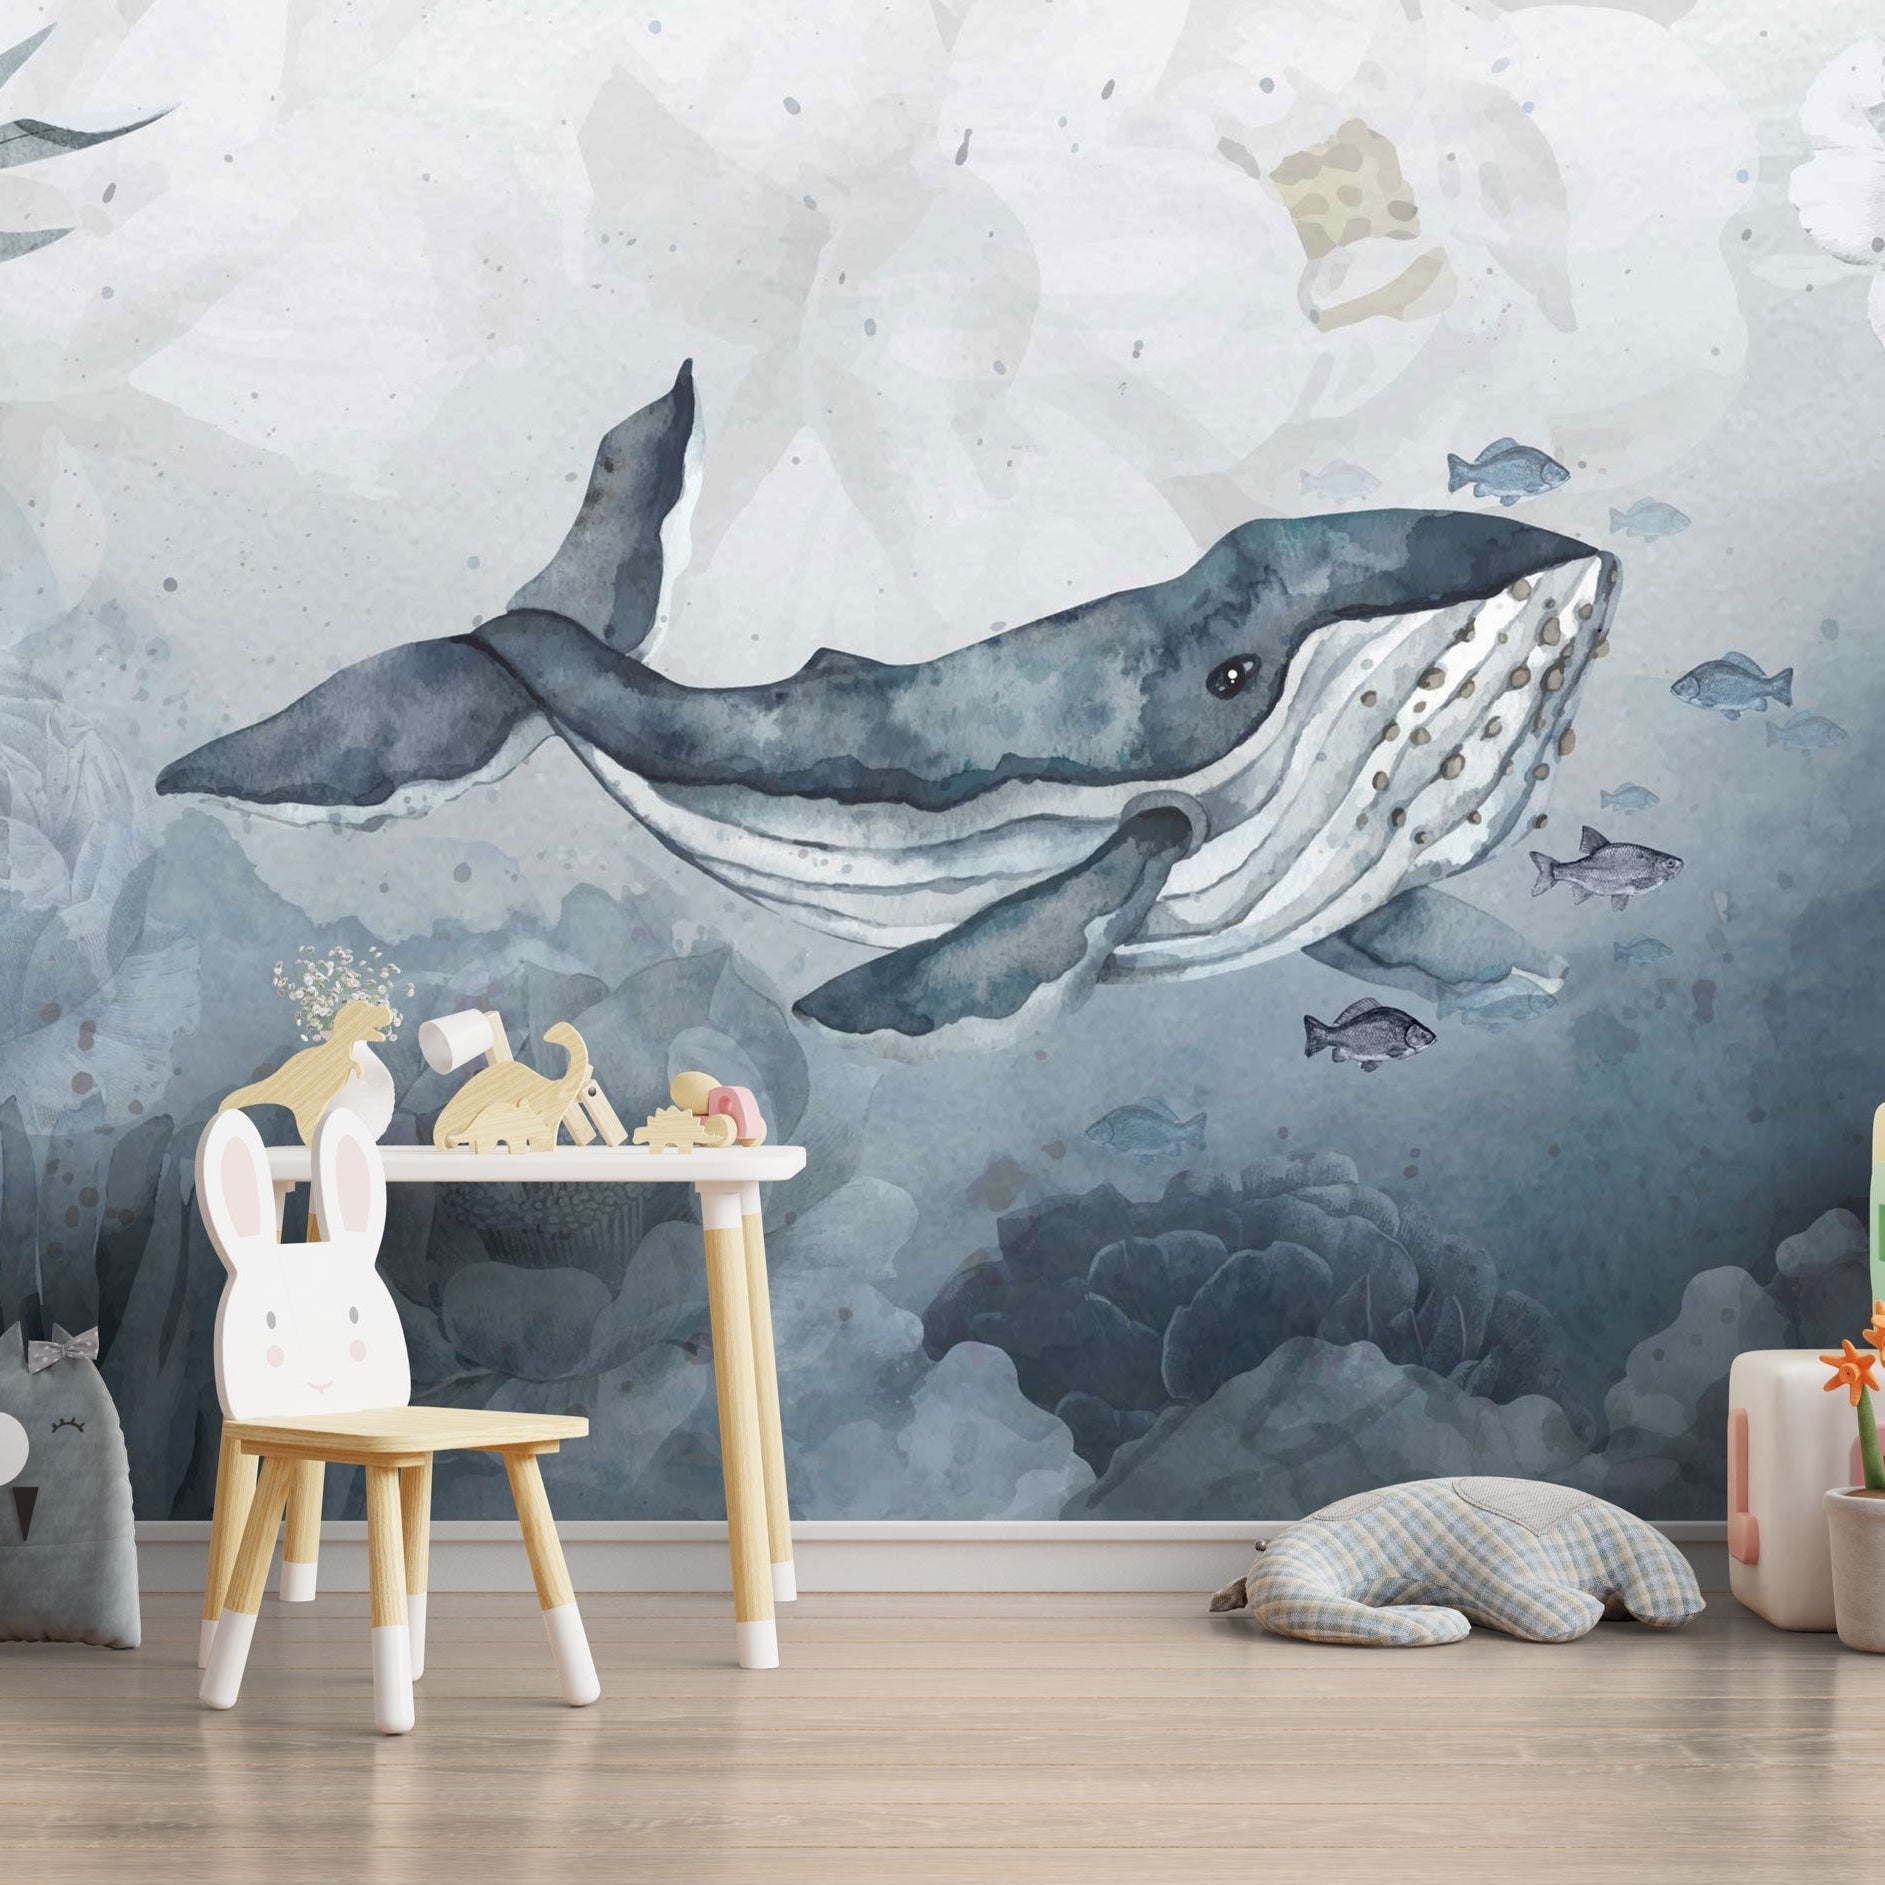 Whale Wallpaper Mural: Stunning Ocean-Themed Wall Decor-GraffitiWallArt